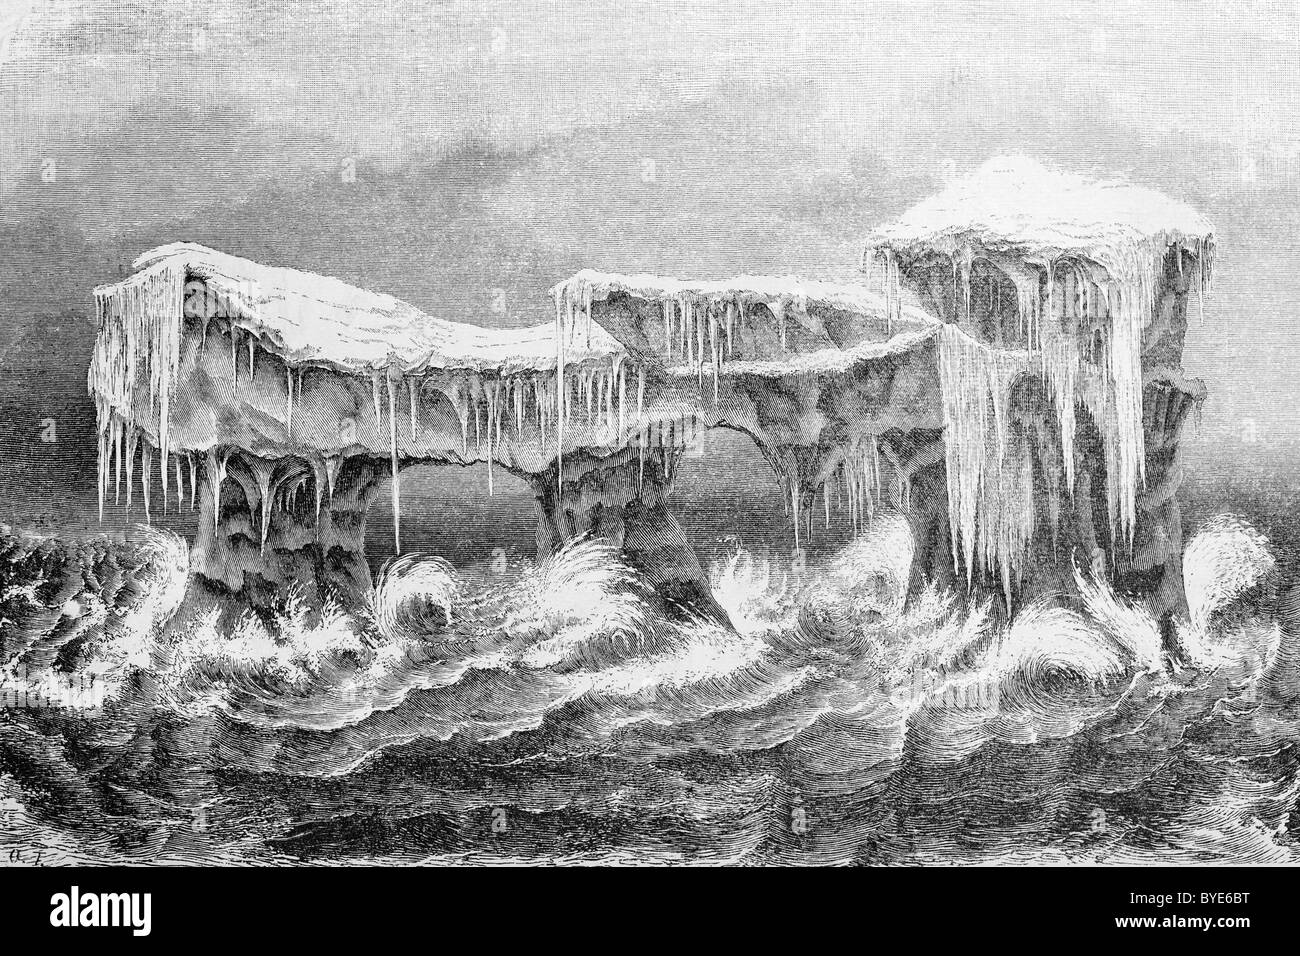 Eisberg im tosenden Meer, Arktis, romantischen Buchillustration aus dem 19. Jahrhundert, Stahlstich Stockfoto